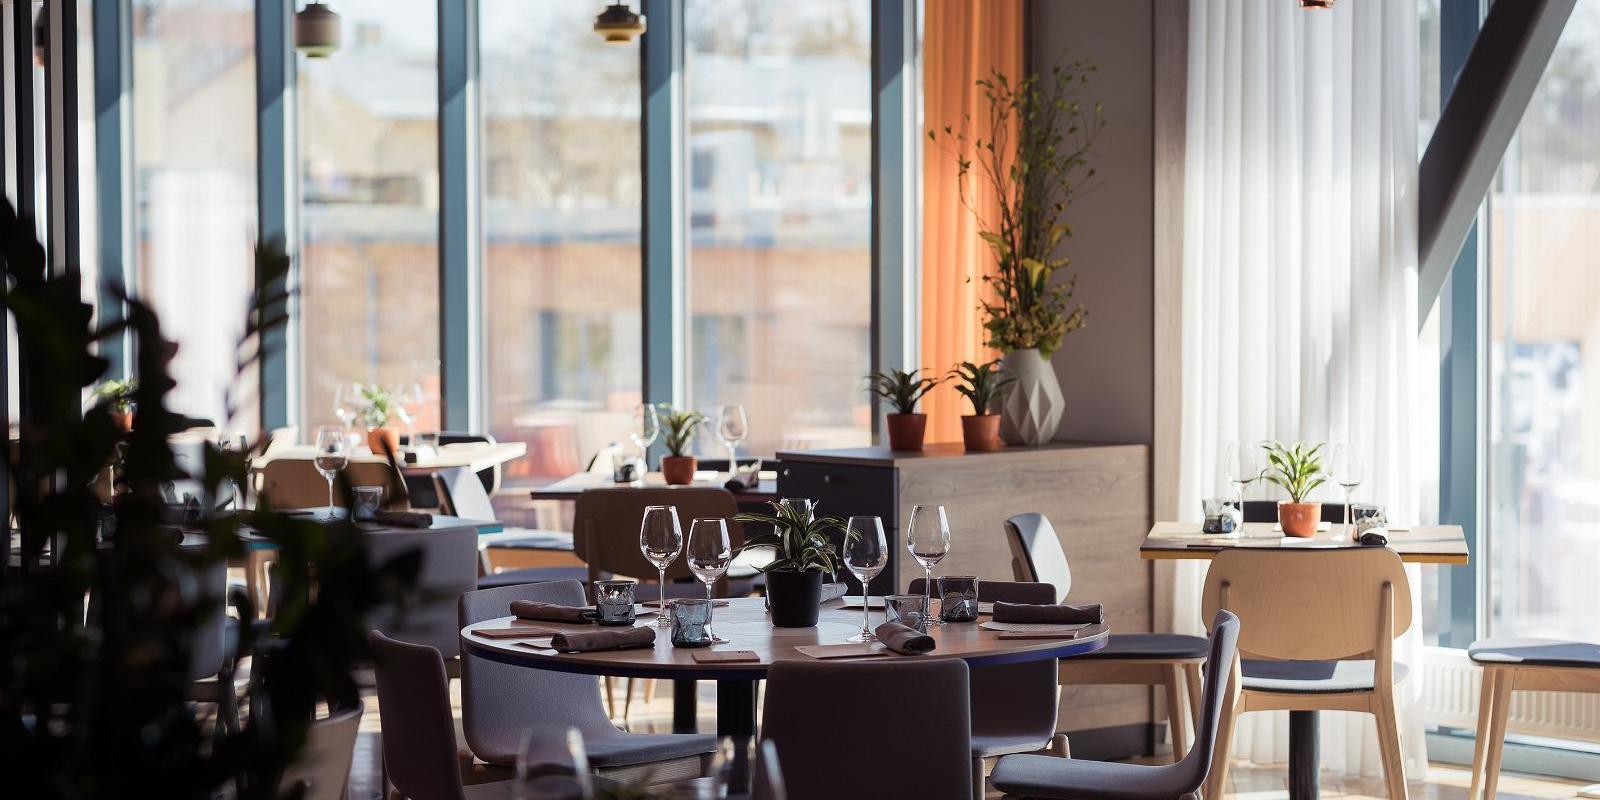 Restoran Fii menüüs on ühendanud parimad Skandinaavia köögi maitsed ning parimad nopped teistest rahvusköökidest. Kasutades puhast toorainet, oleme pü